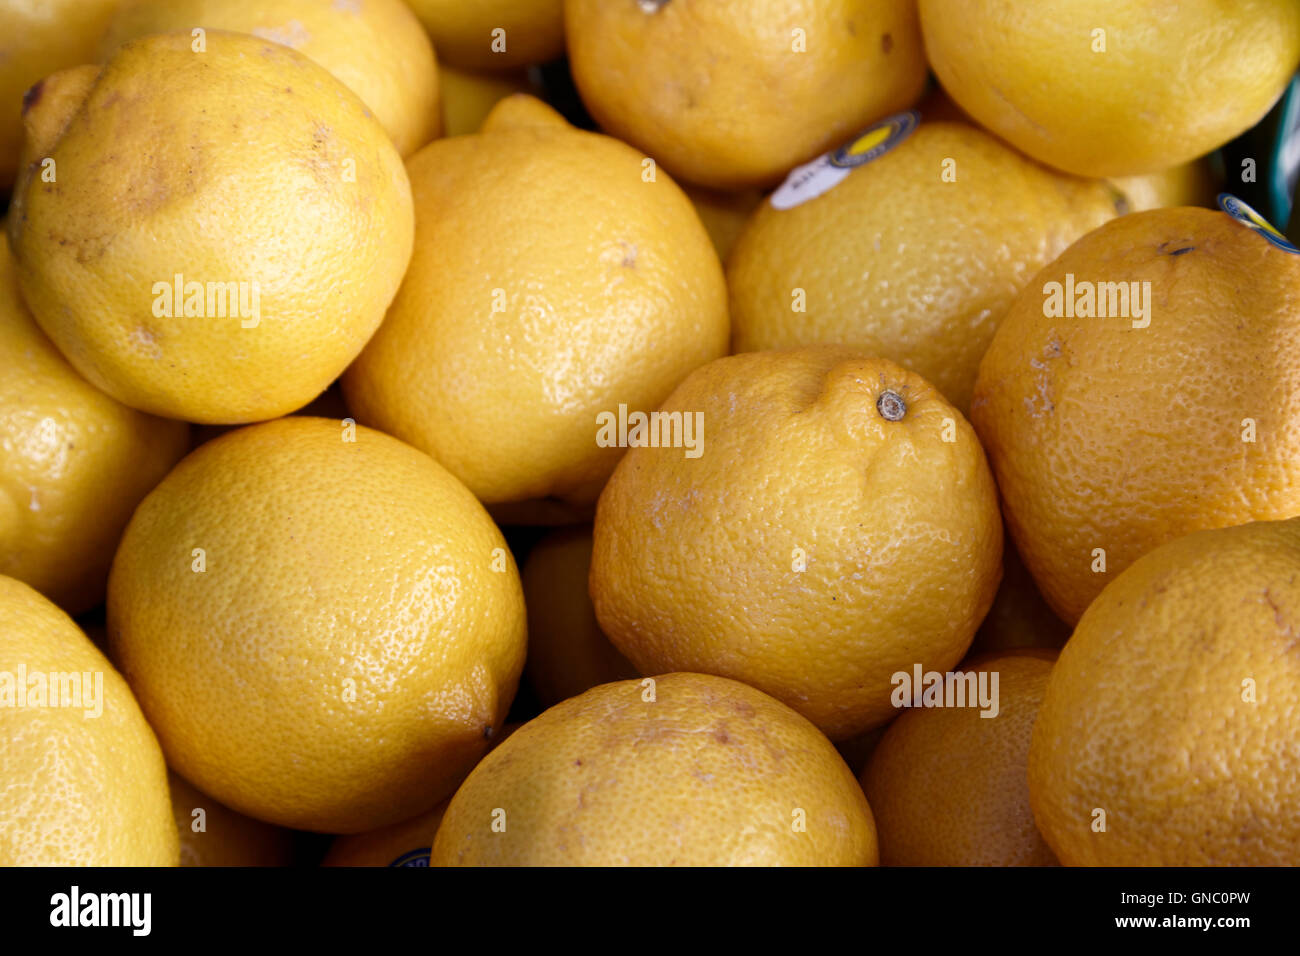 Limoni freschi sul display un fruttivendolo stallo alimentari nel Regno Unito Foto Stock